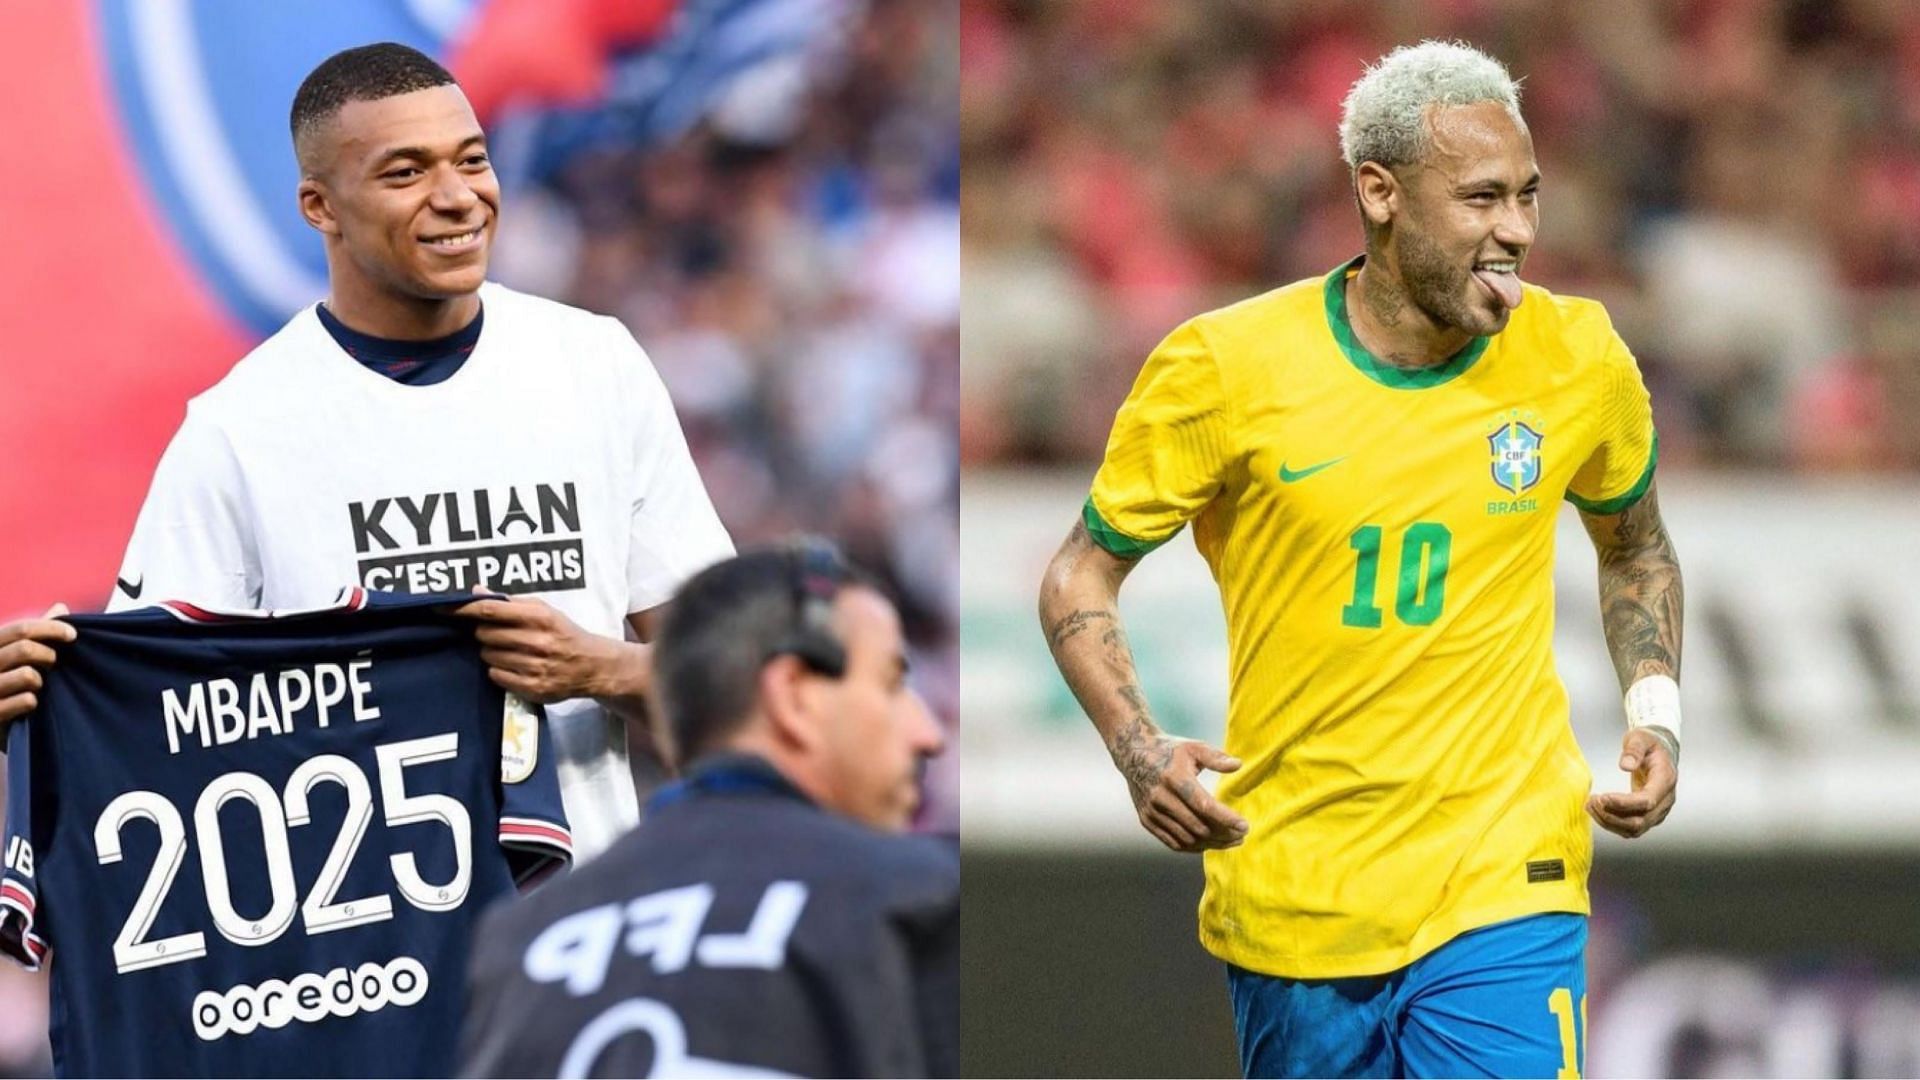 Kylian Mbappe (left, @k.mbappe), Neymar Jr. (right, @neymarjr) [images courtesy of Instagram]